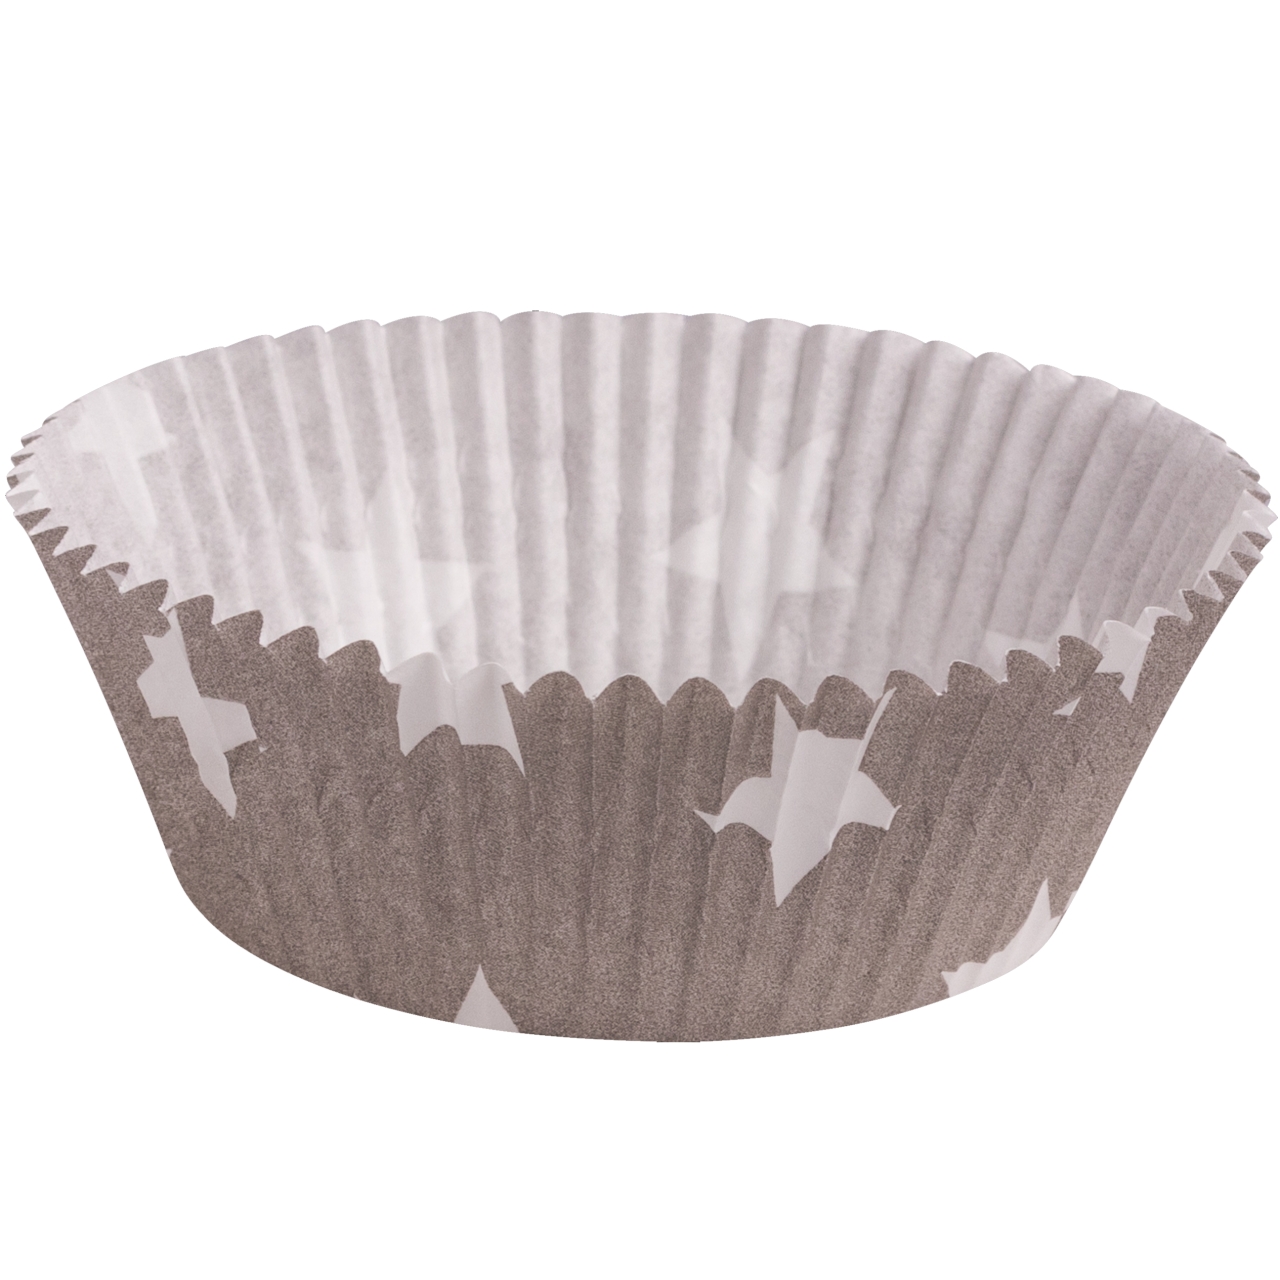 Muffinförmchen, grau, weiße Sterne, 60 Stck, 5 cm